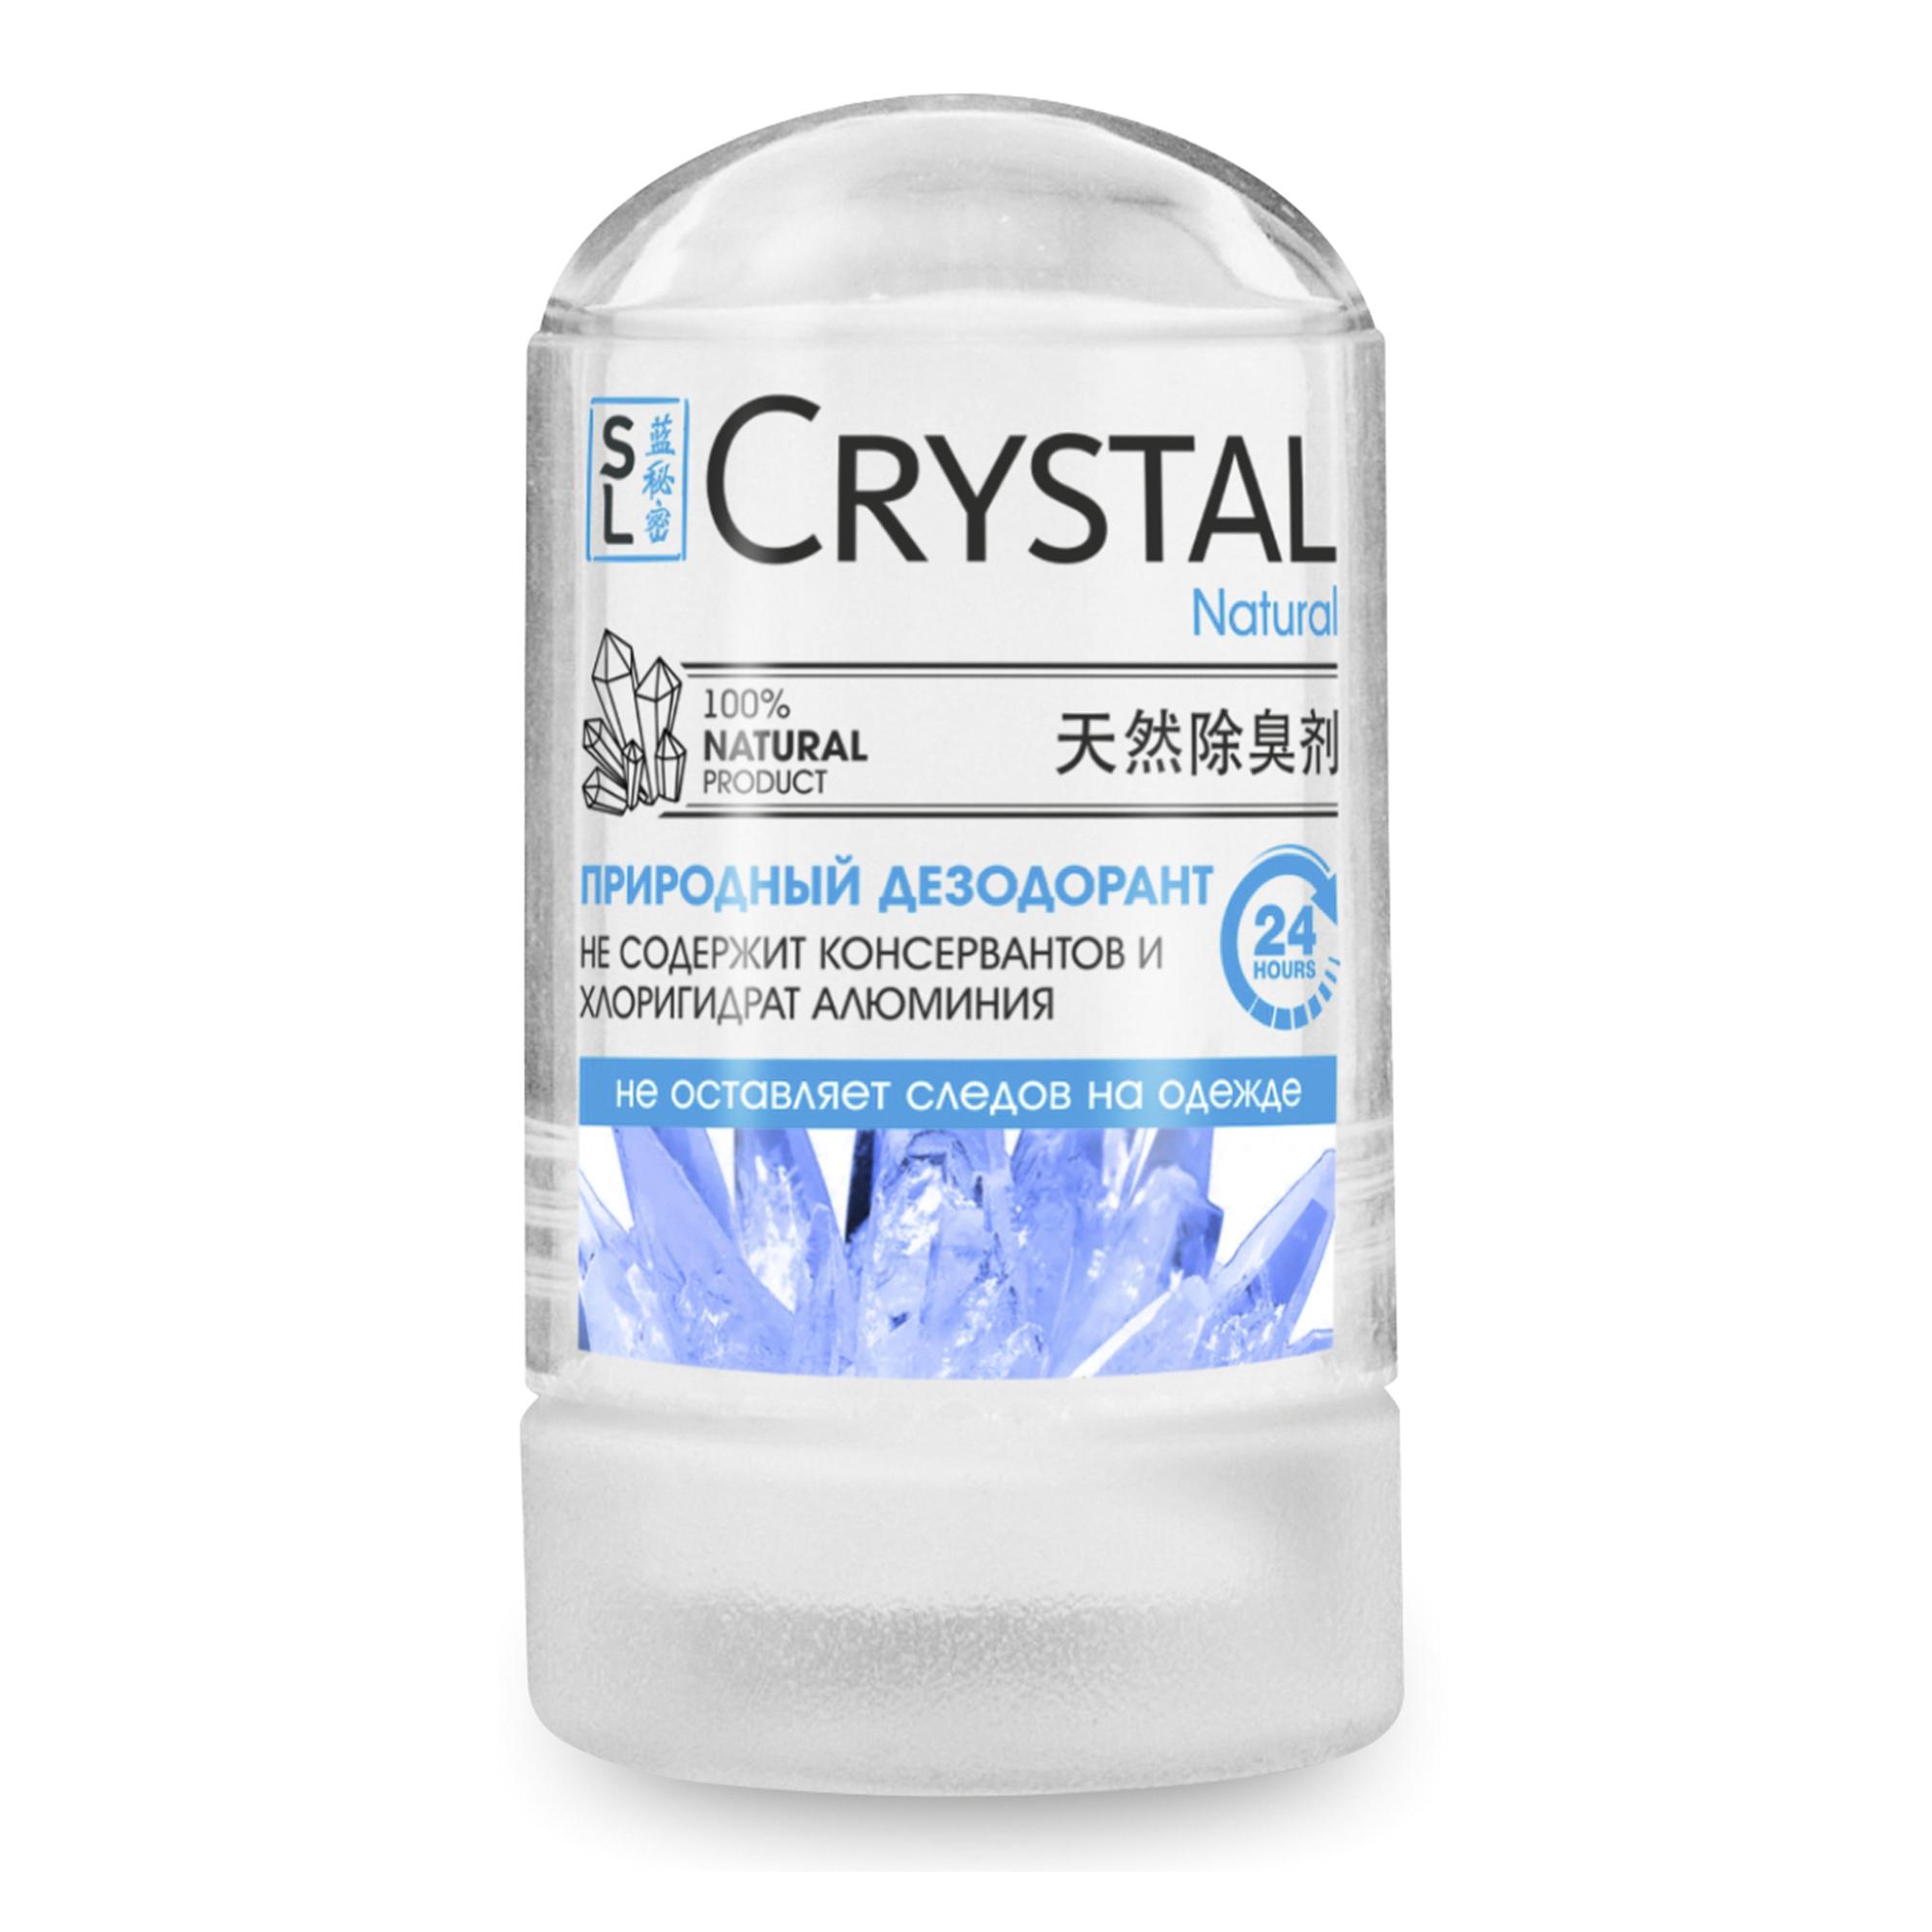 Дезодорант-кристалл Secrets Lan, 60 г